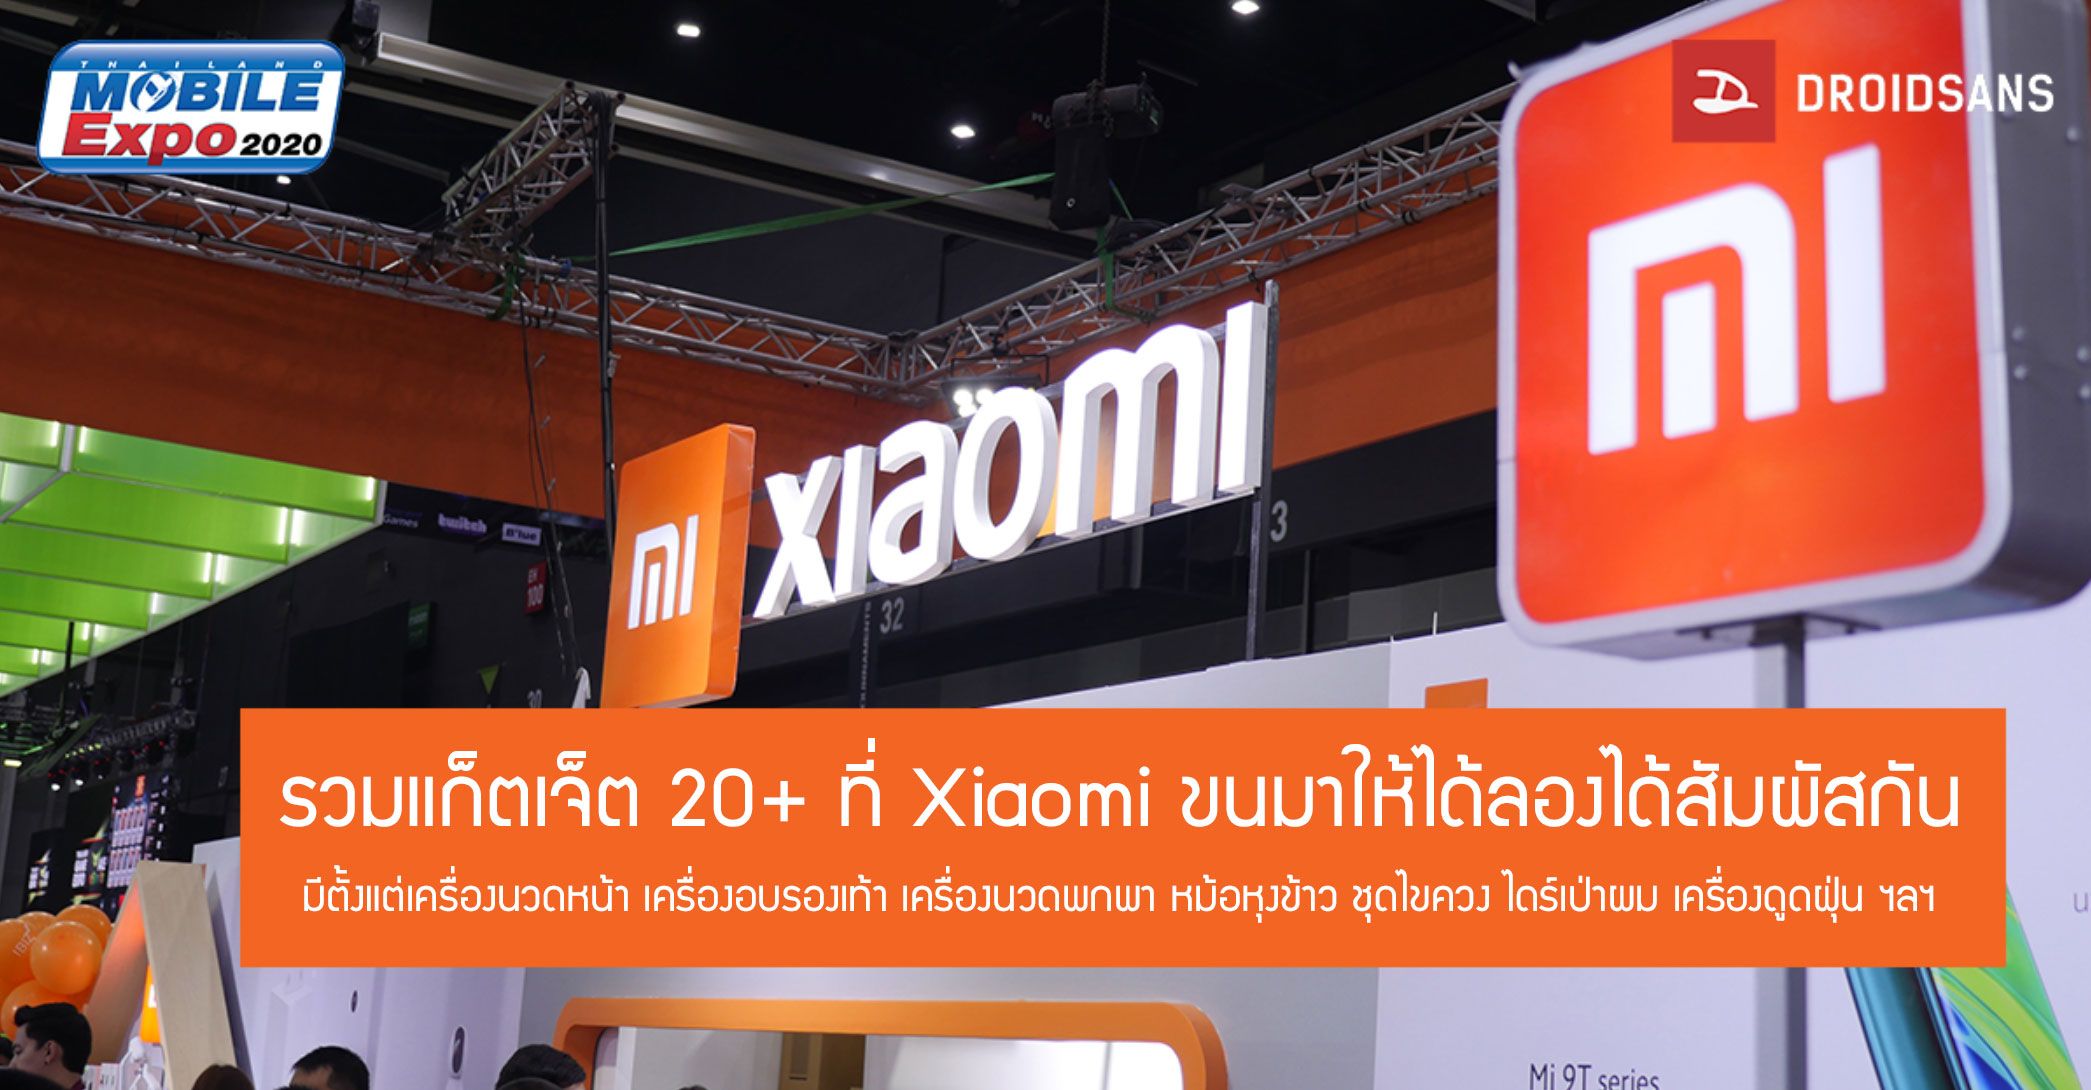 รวมแก็ตเจ็ตกว่า 20 ชนิด ที่ Xiaomi นำมาวางขายในงาน Thailand Mobile Expo